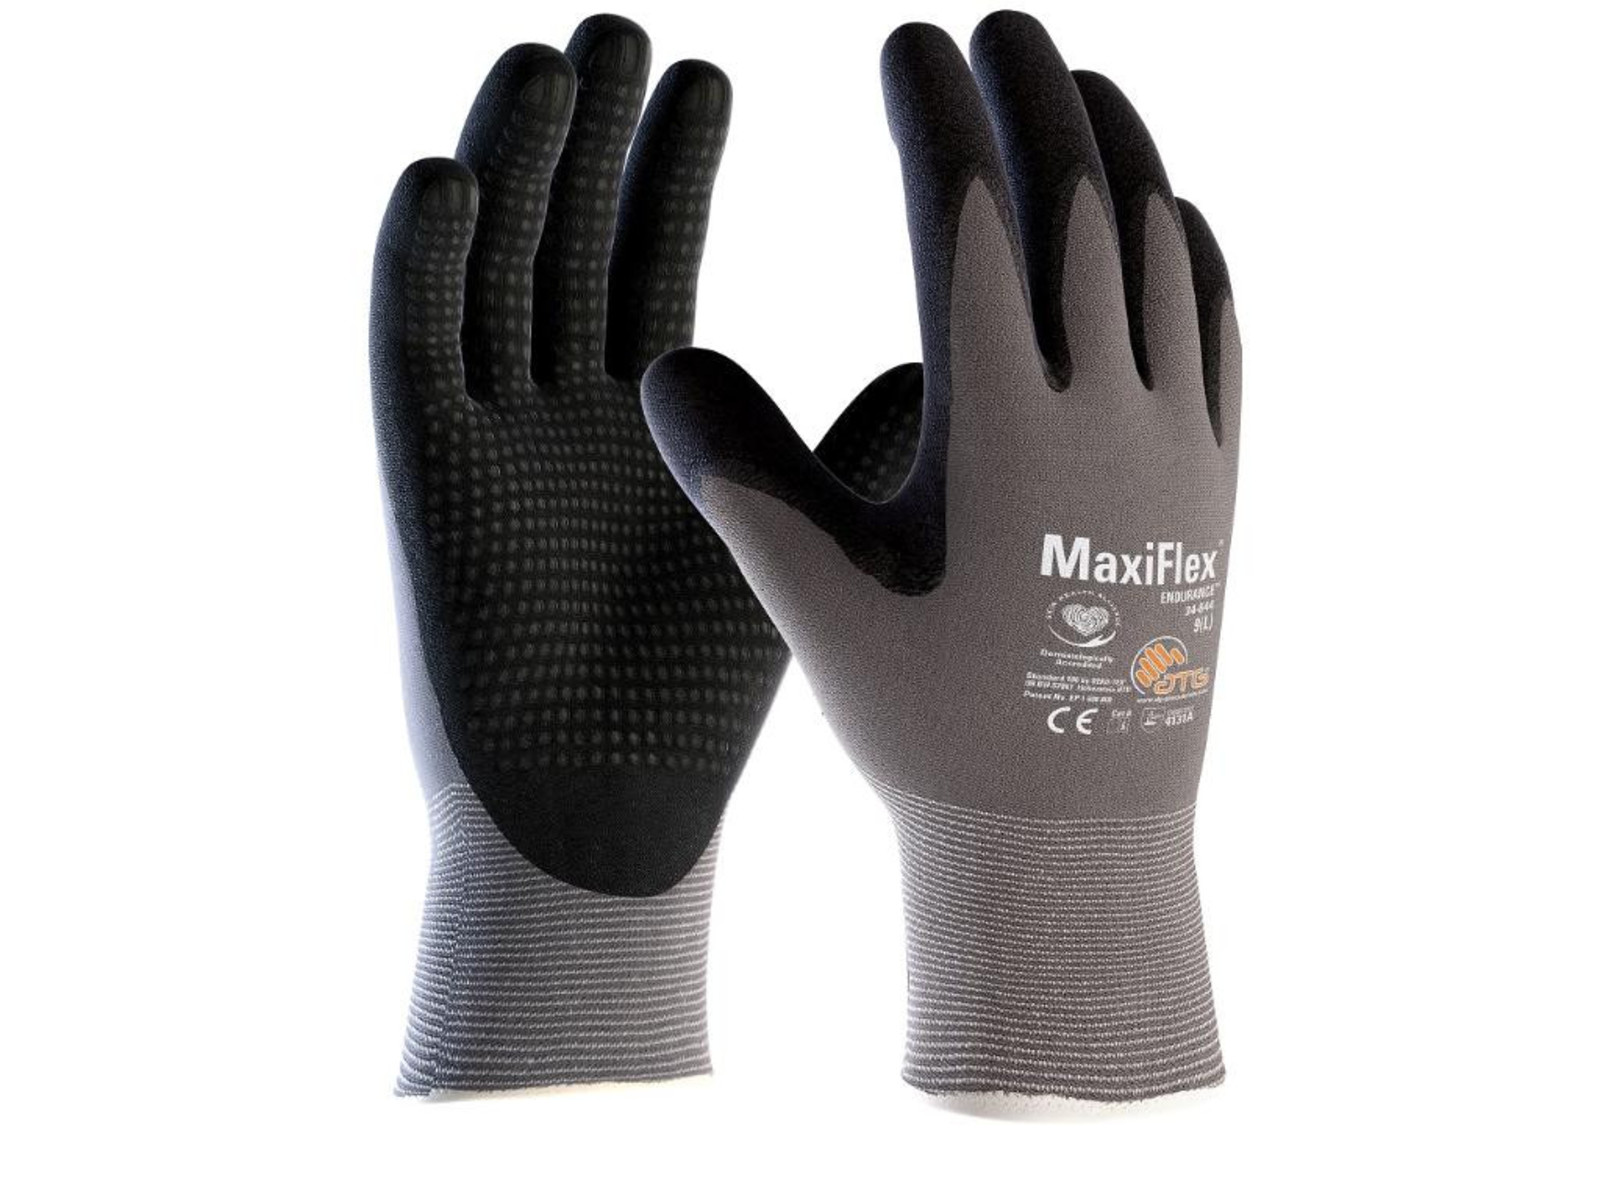 Pracovné povrstvené rukavice ATG MaxiFlex Endurance 34-844 - veľkosť: 7/S, farba: sivá